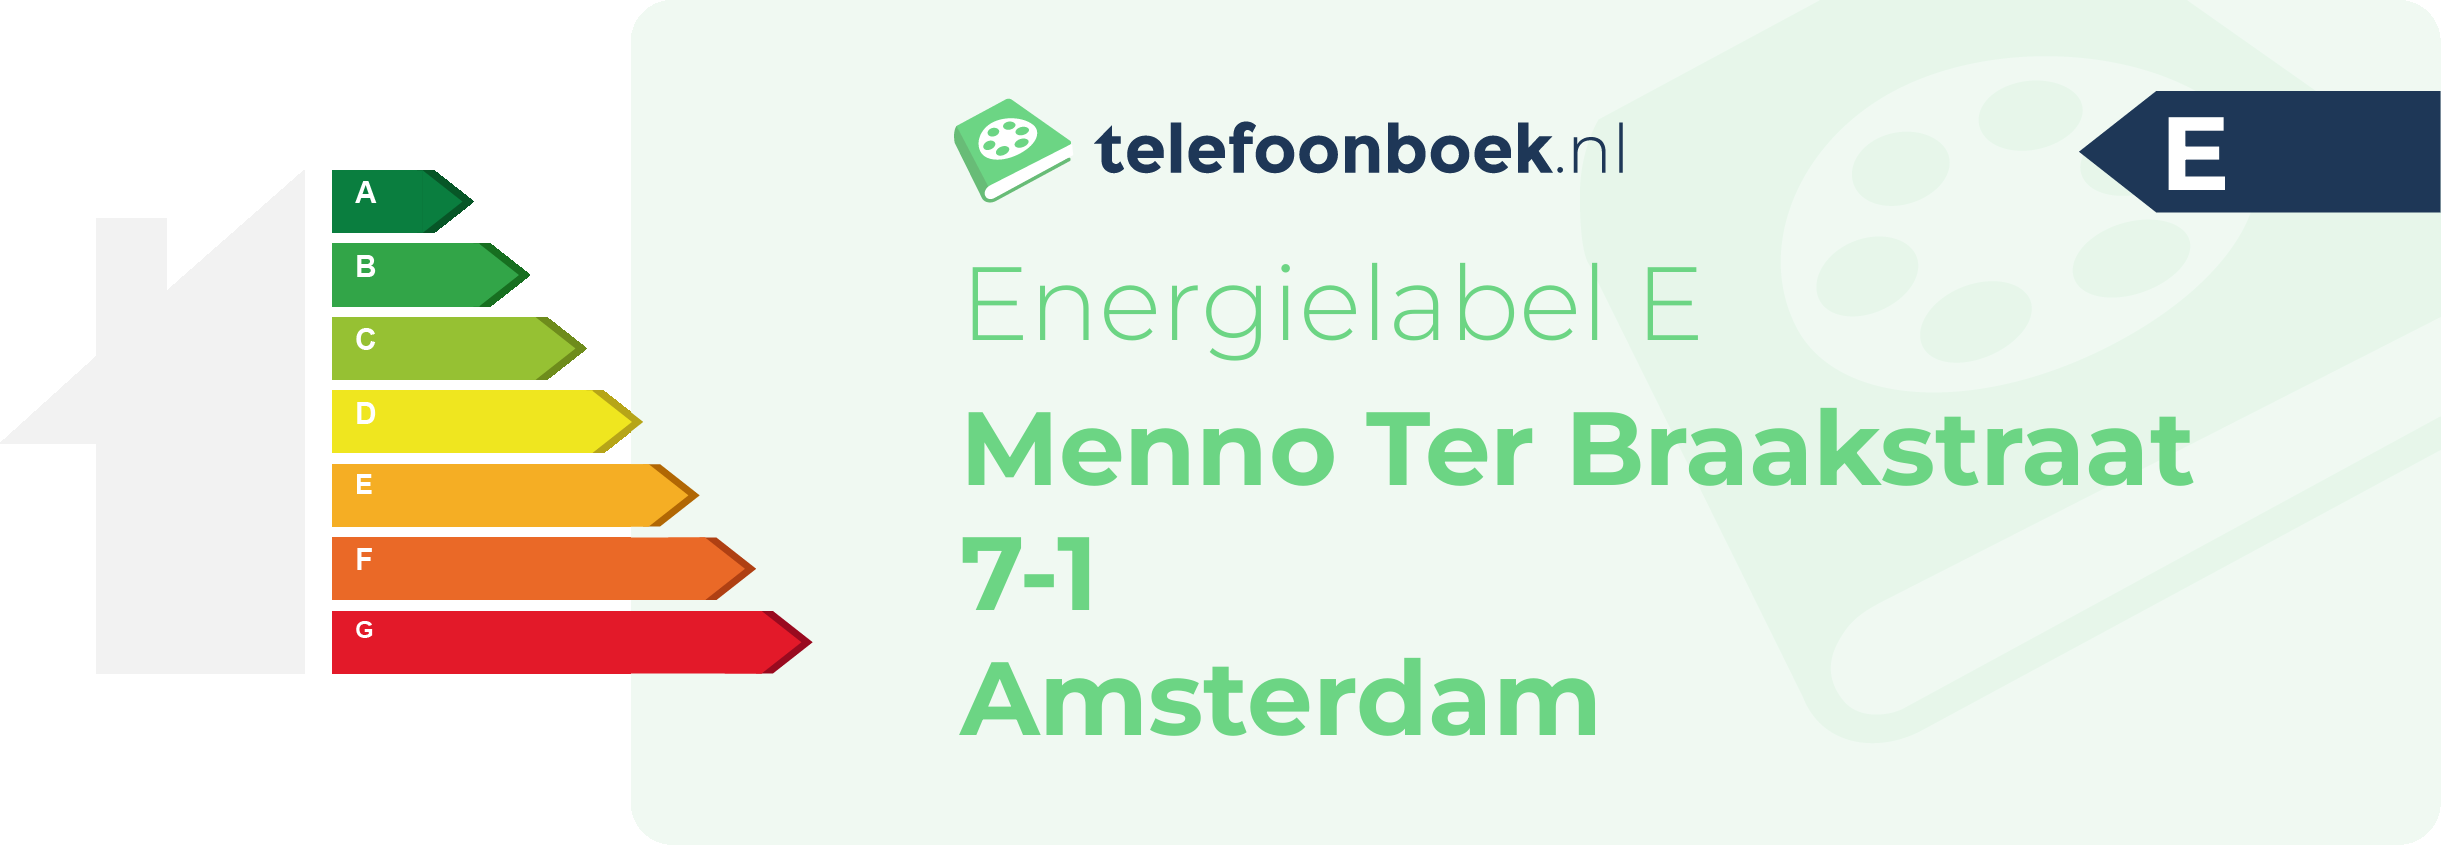 Energielabel Menno Ter Braakstraat 7-1 Amsterdam